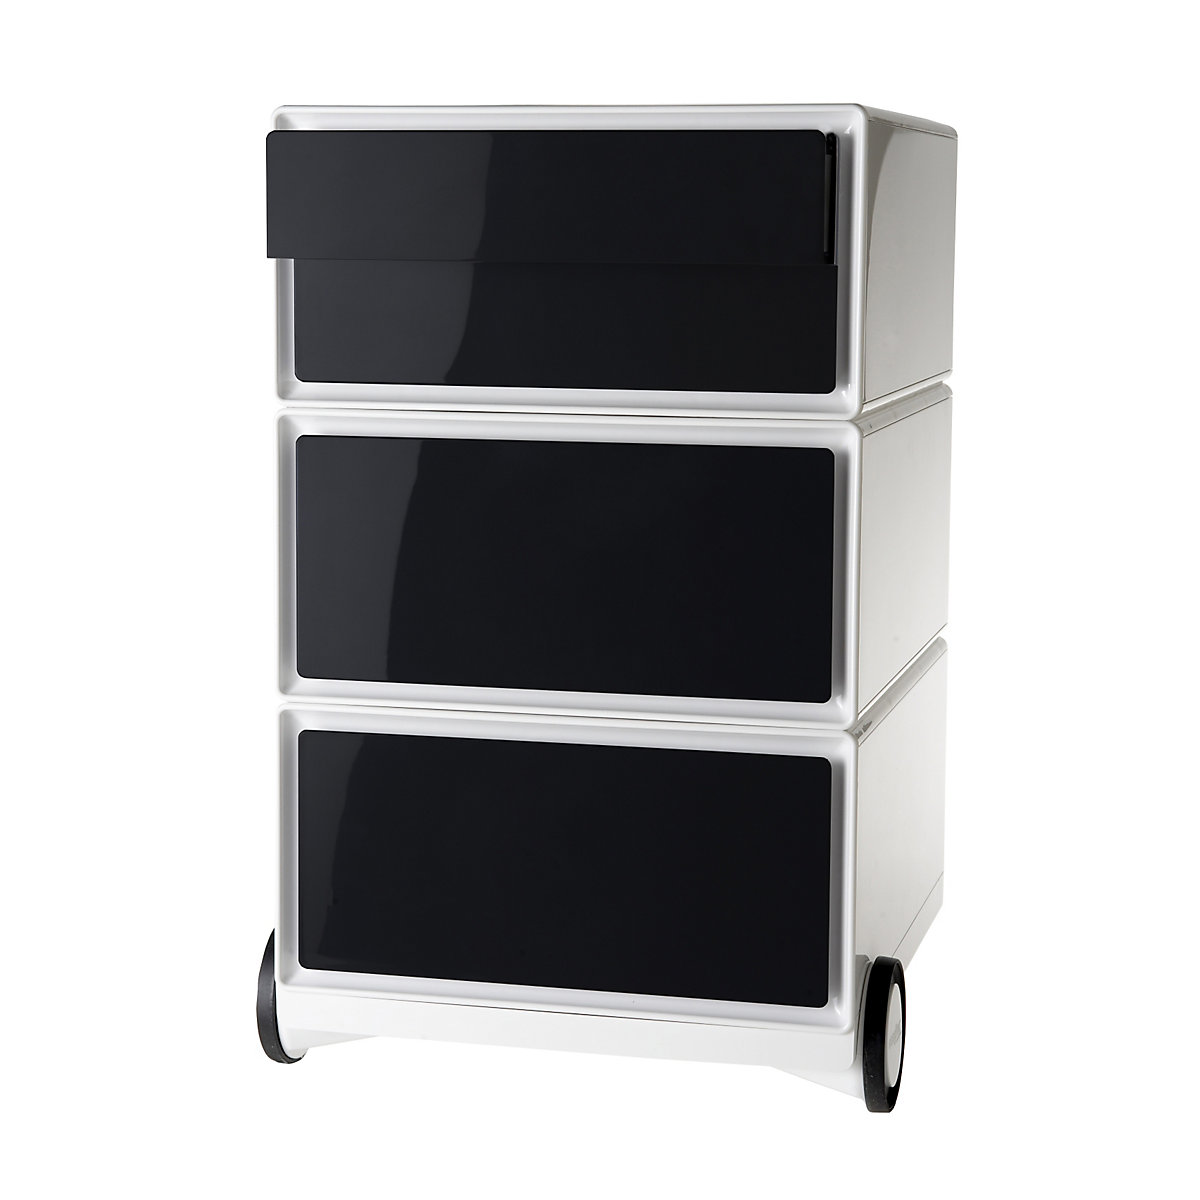 Pomični predalnik easyBox® – Paperflow, 2 predala, 2 nižja predala, bel / črn-13